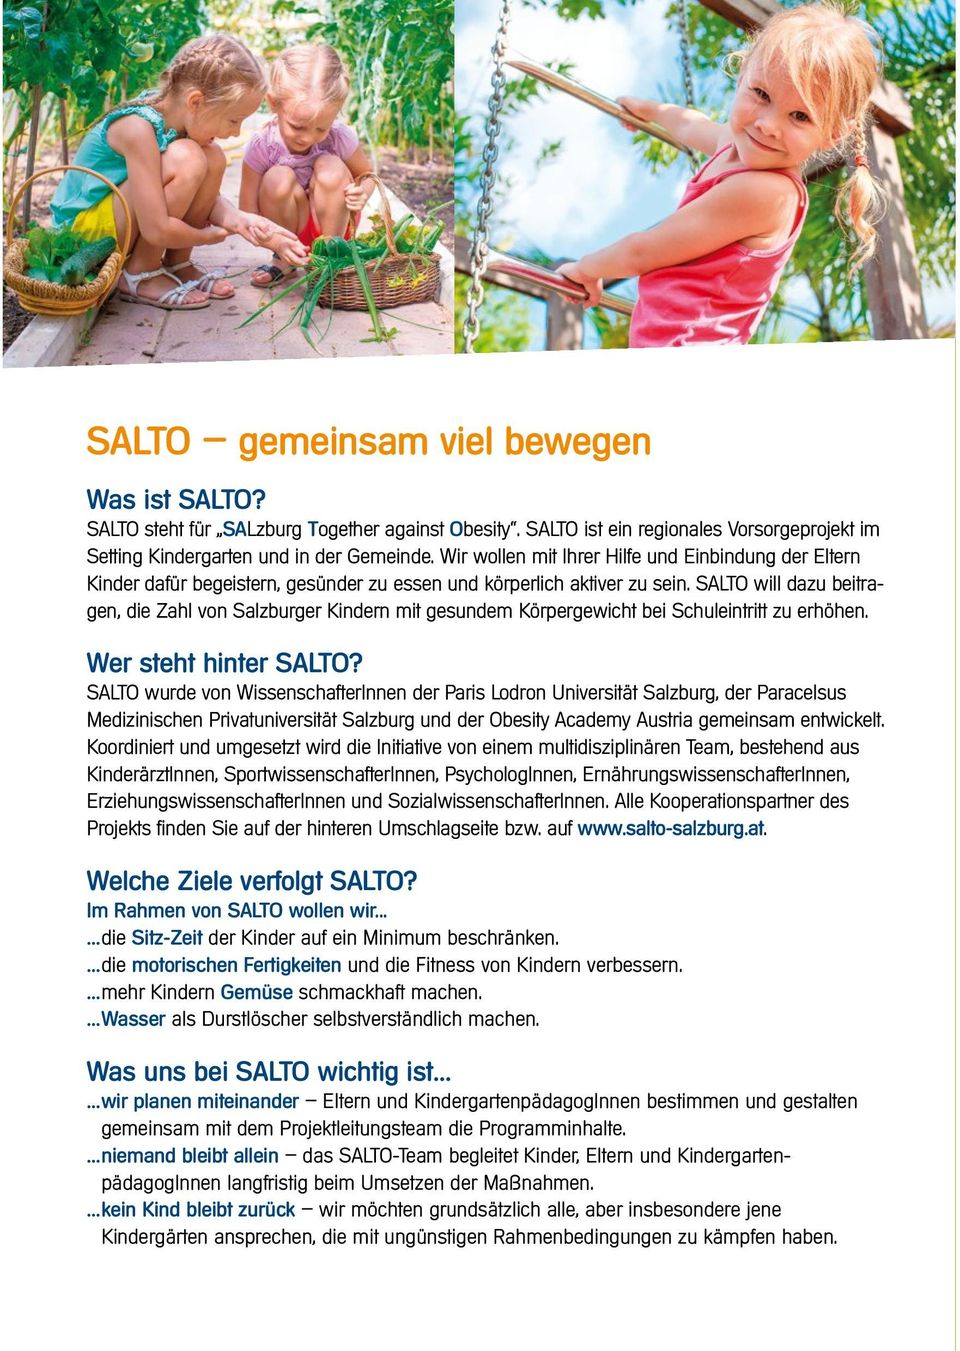 SALTO will dazu beitragen, die Zahl von Salzburger Kindern mit gesundem Körpergewicht bei Schuleintritt zu erhöhen. Wer steht hinter SALTO?